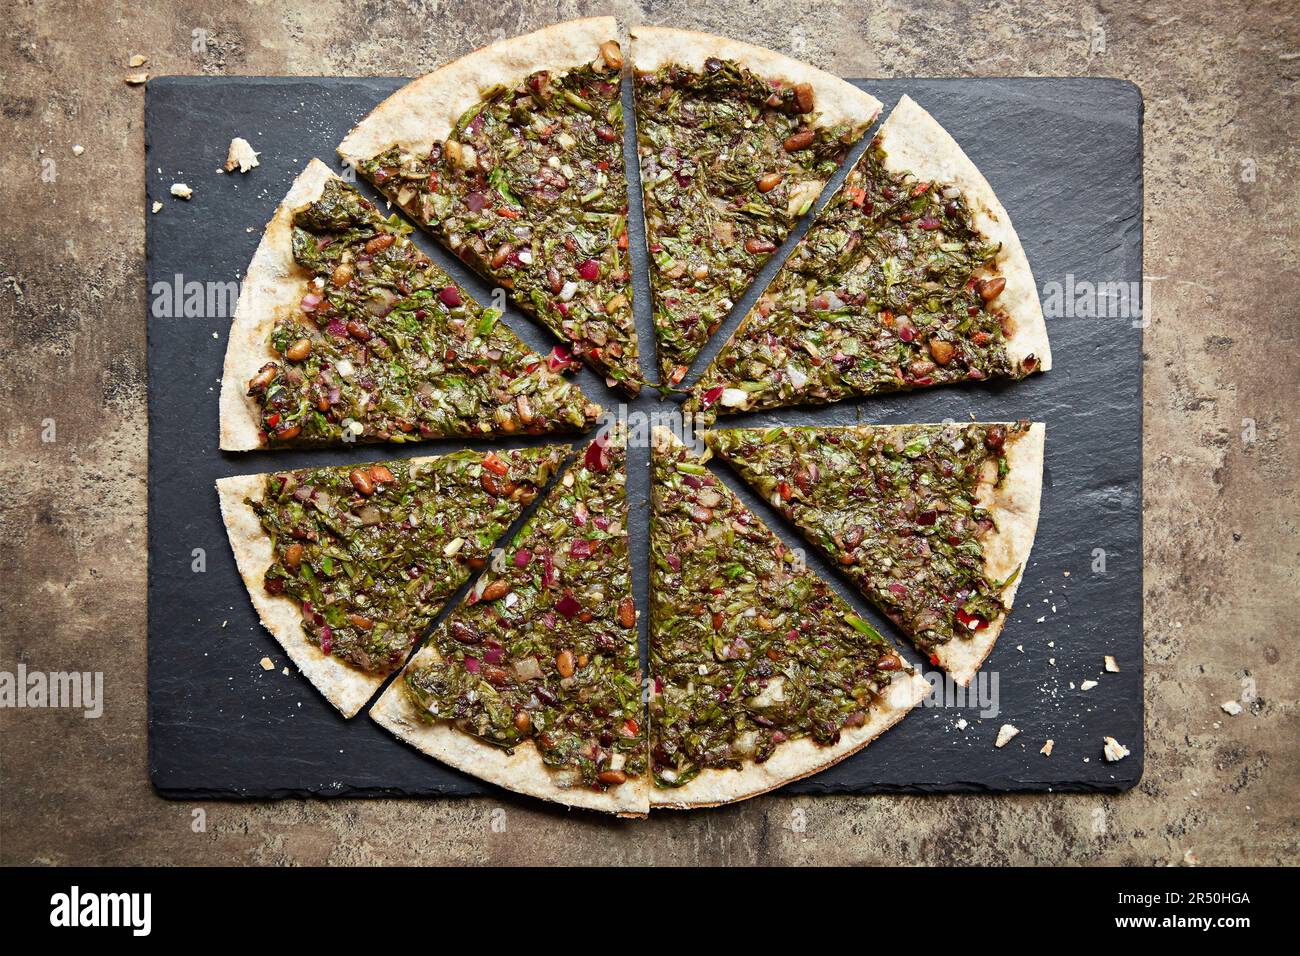 Una pizza sormontata con verdure a foglia, pistacchi, pinoli e melograno, affettata su un piatto di ardesia Foto Stock